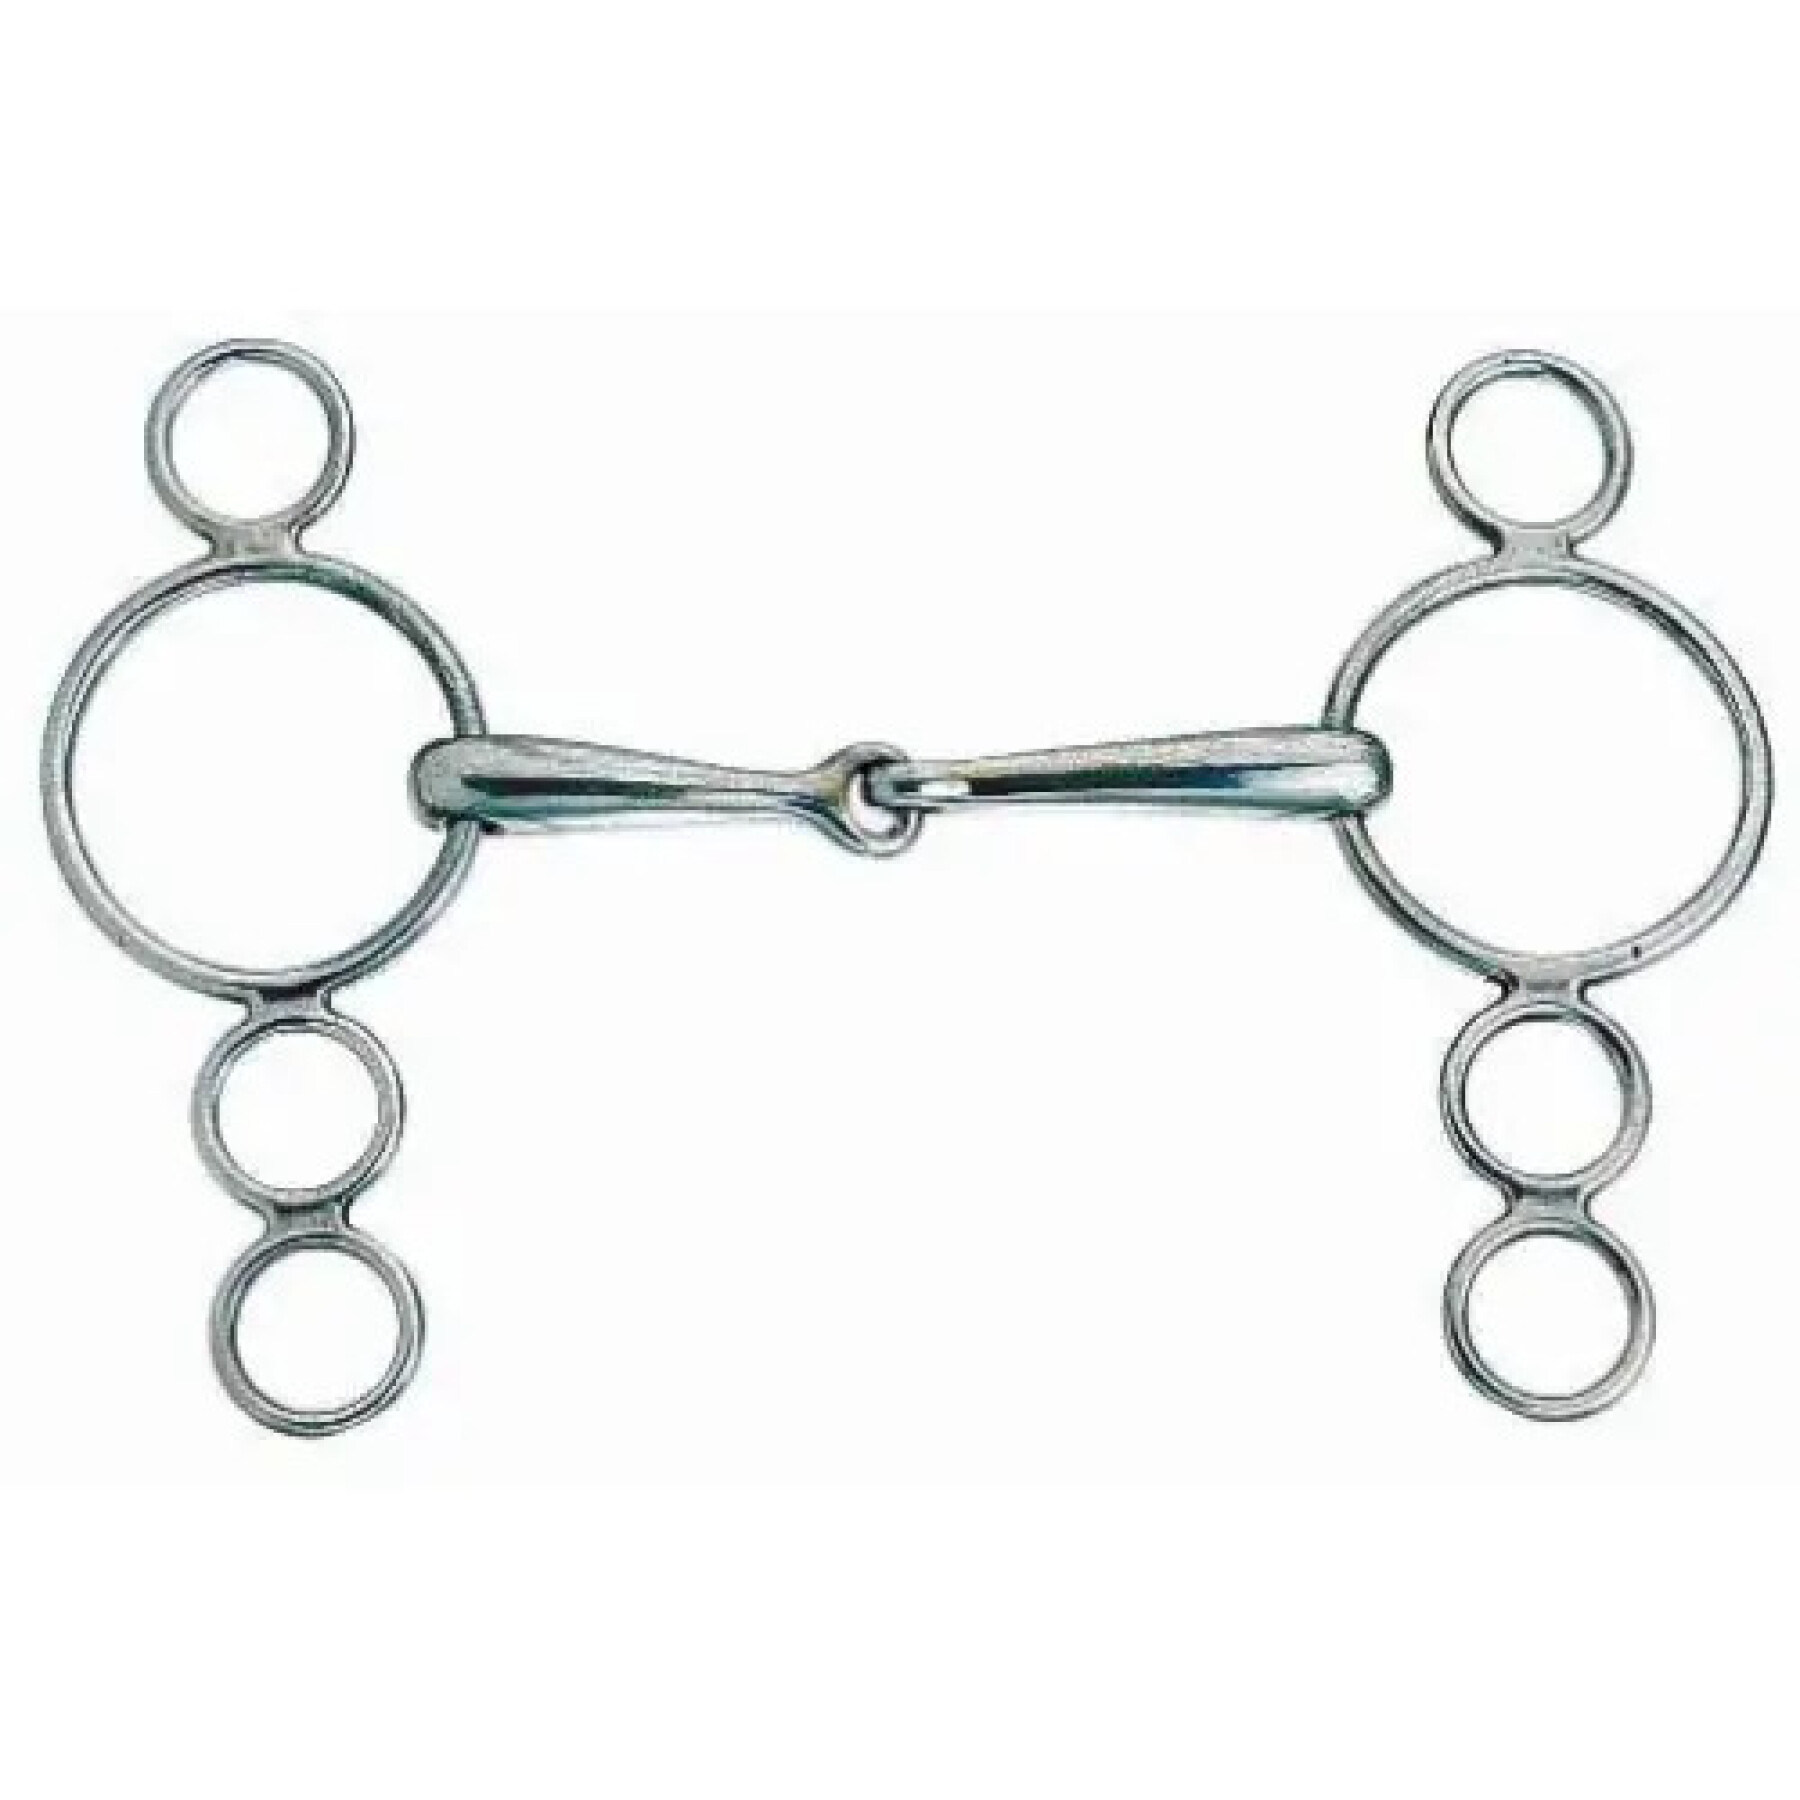 Morso articolato a 3 anelli in acciaio inox per cavalli olandesi Weatherbeeta Korsteel